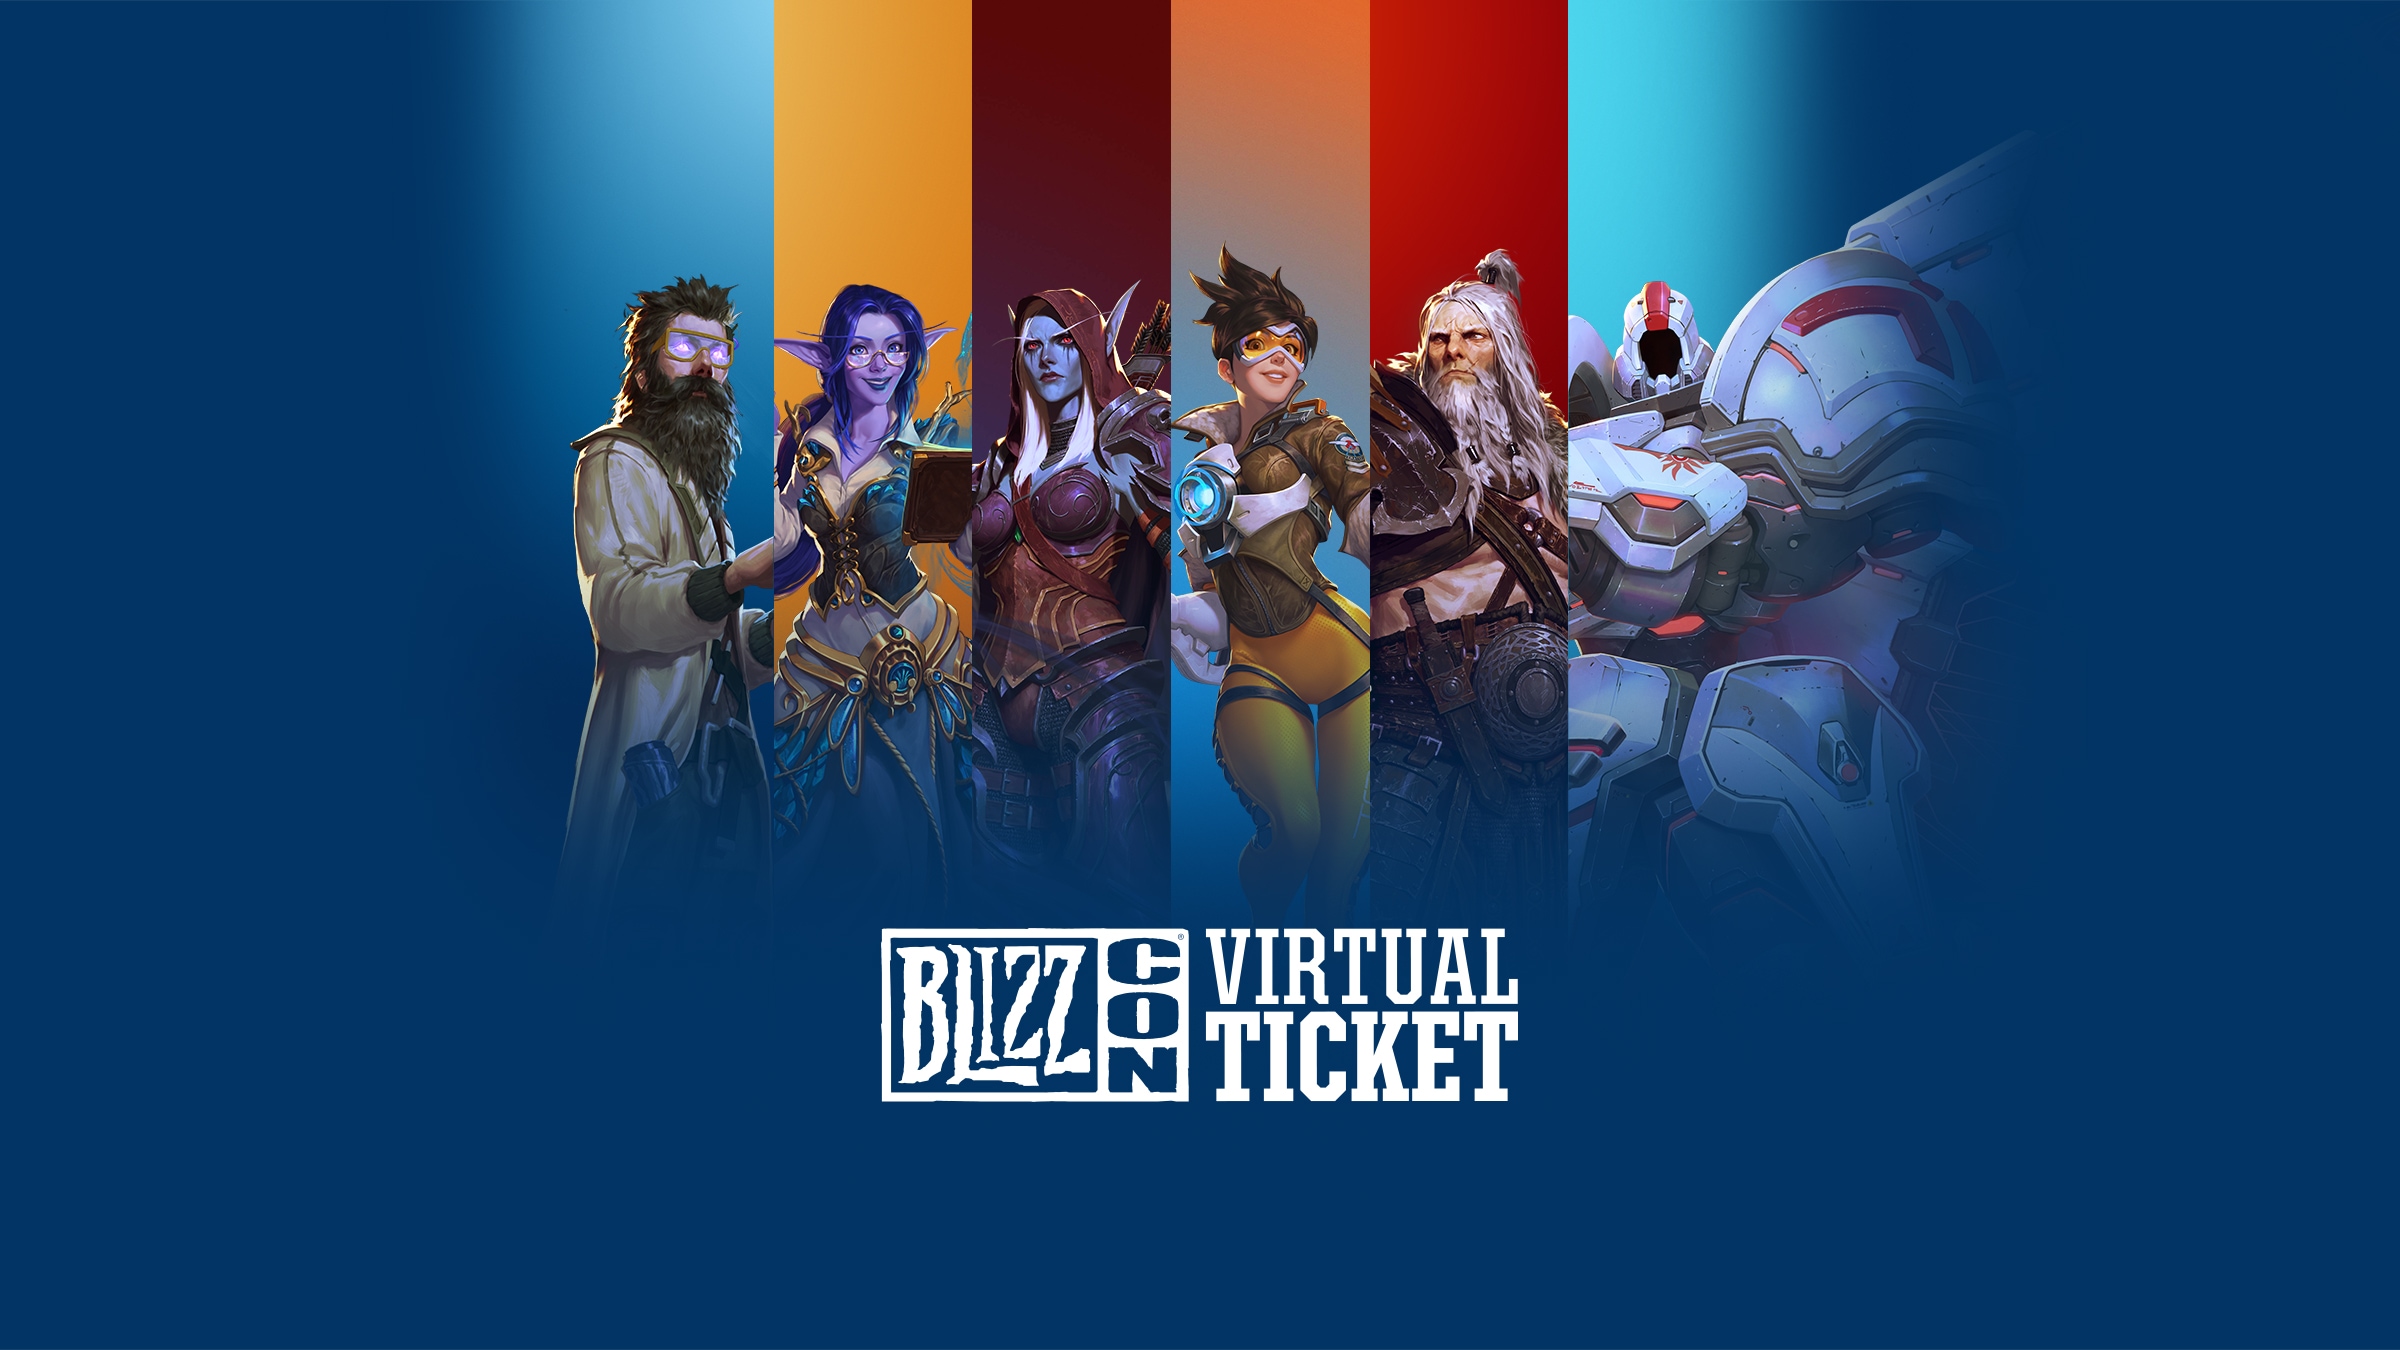 自宅で楽しむblizzcon 2019をバーチャルチケットでレベルアップ 全てのニュース Blizzard ニュース